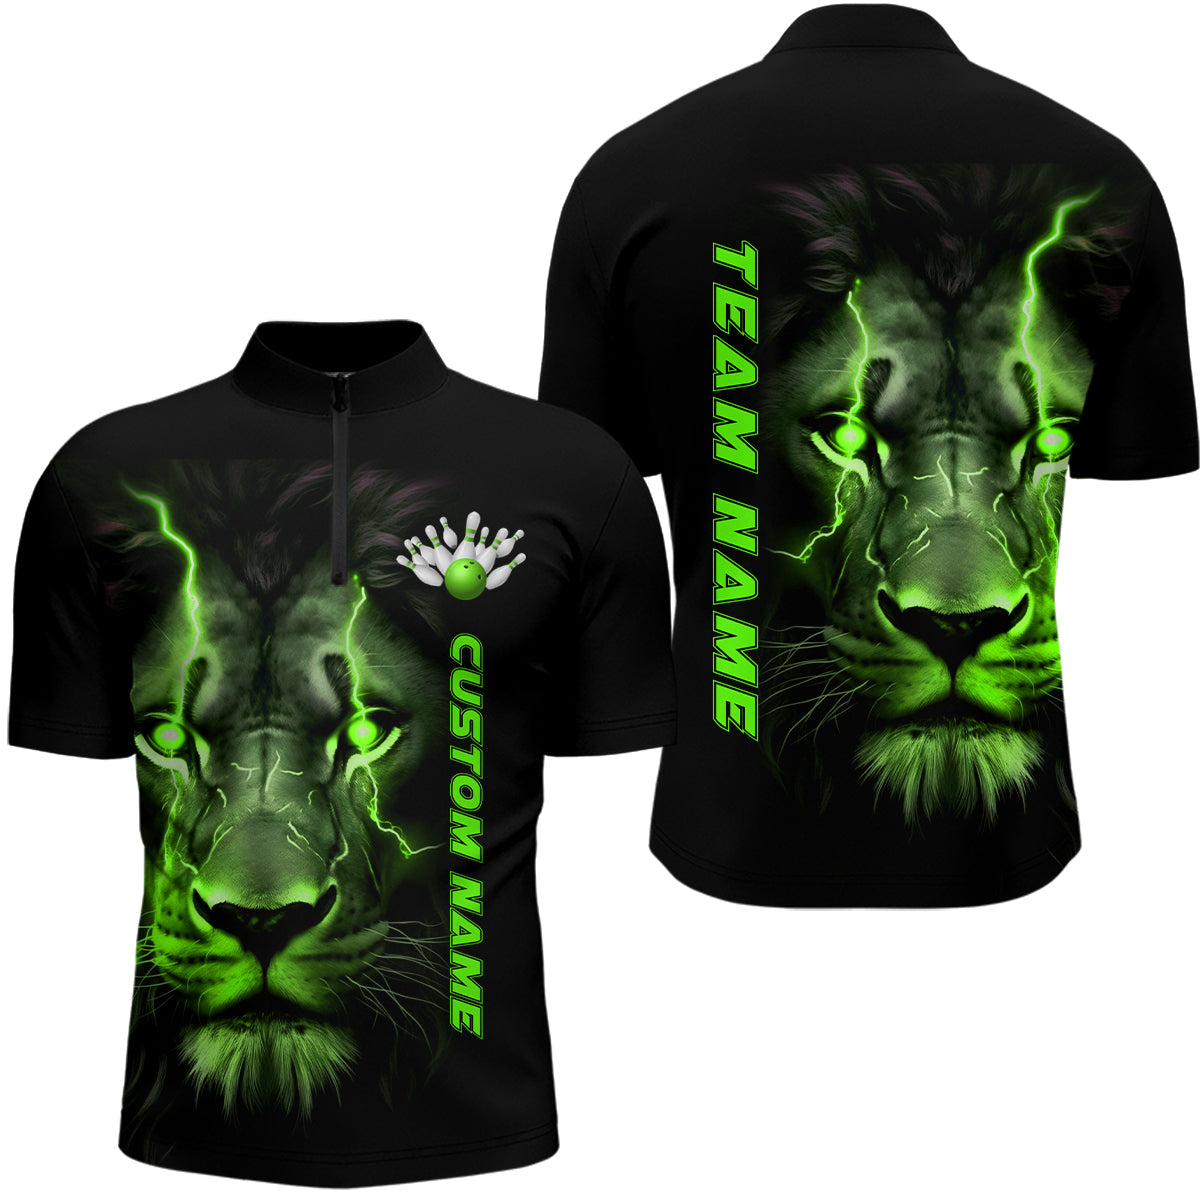 Bowling Customized Jersey Shirt Lion Green Lights Quarter Zip Bowling Shirt, Outfit For Men, Women, Bowlers, Bowling Team